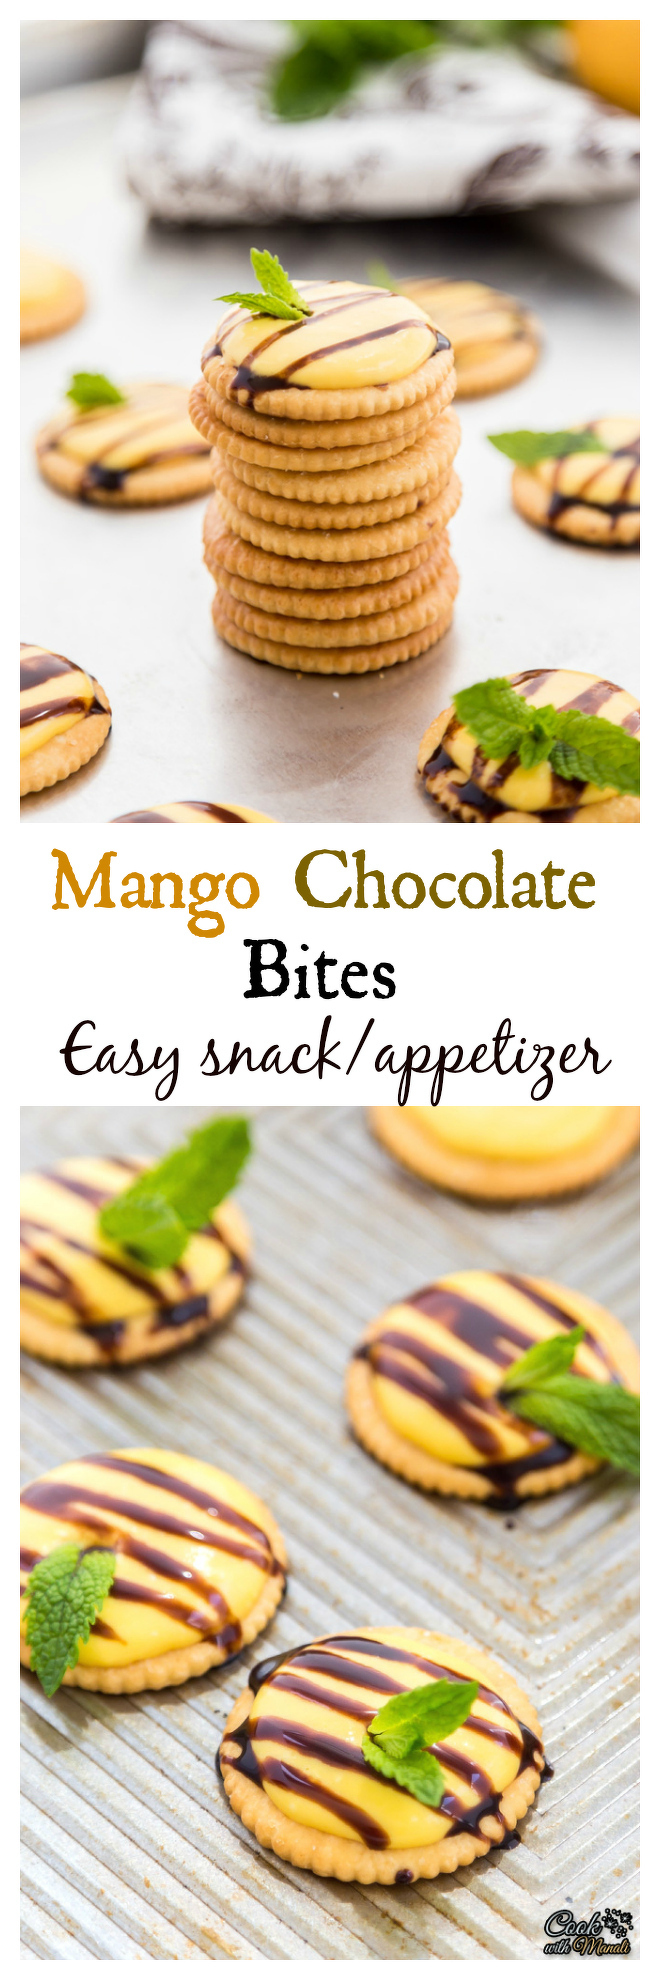 Mango Chocolate Bites Collage-nocwm